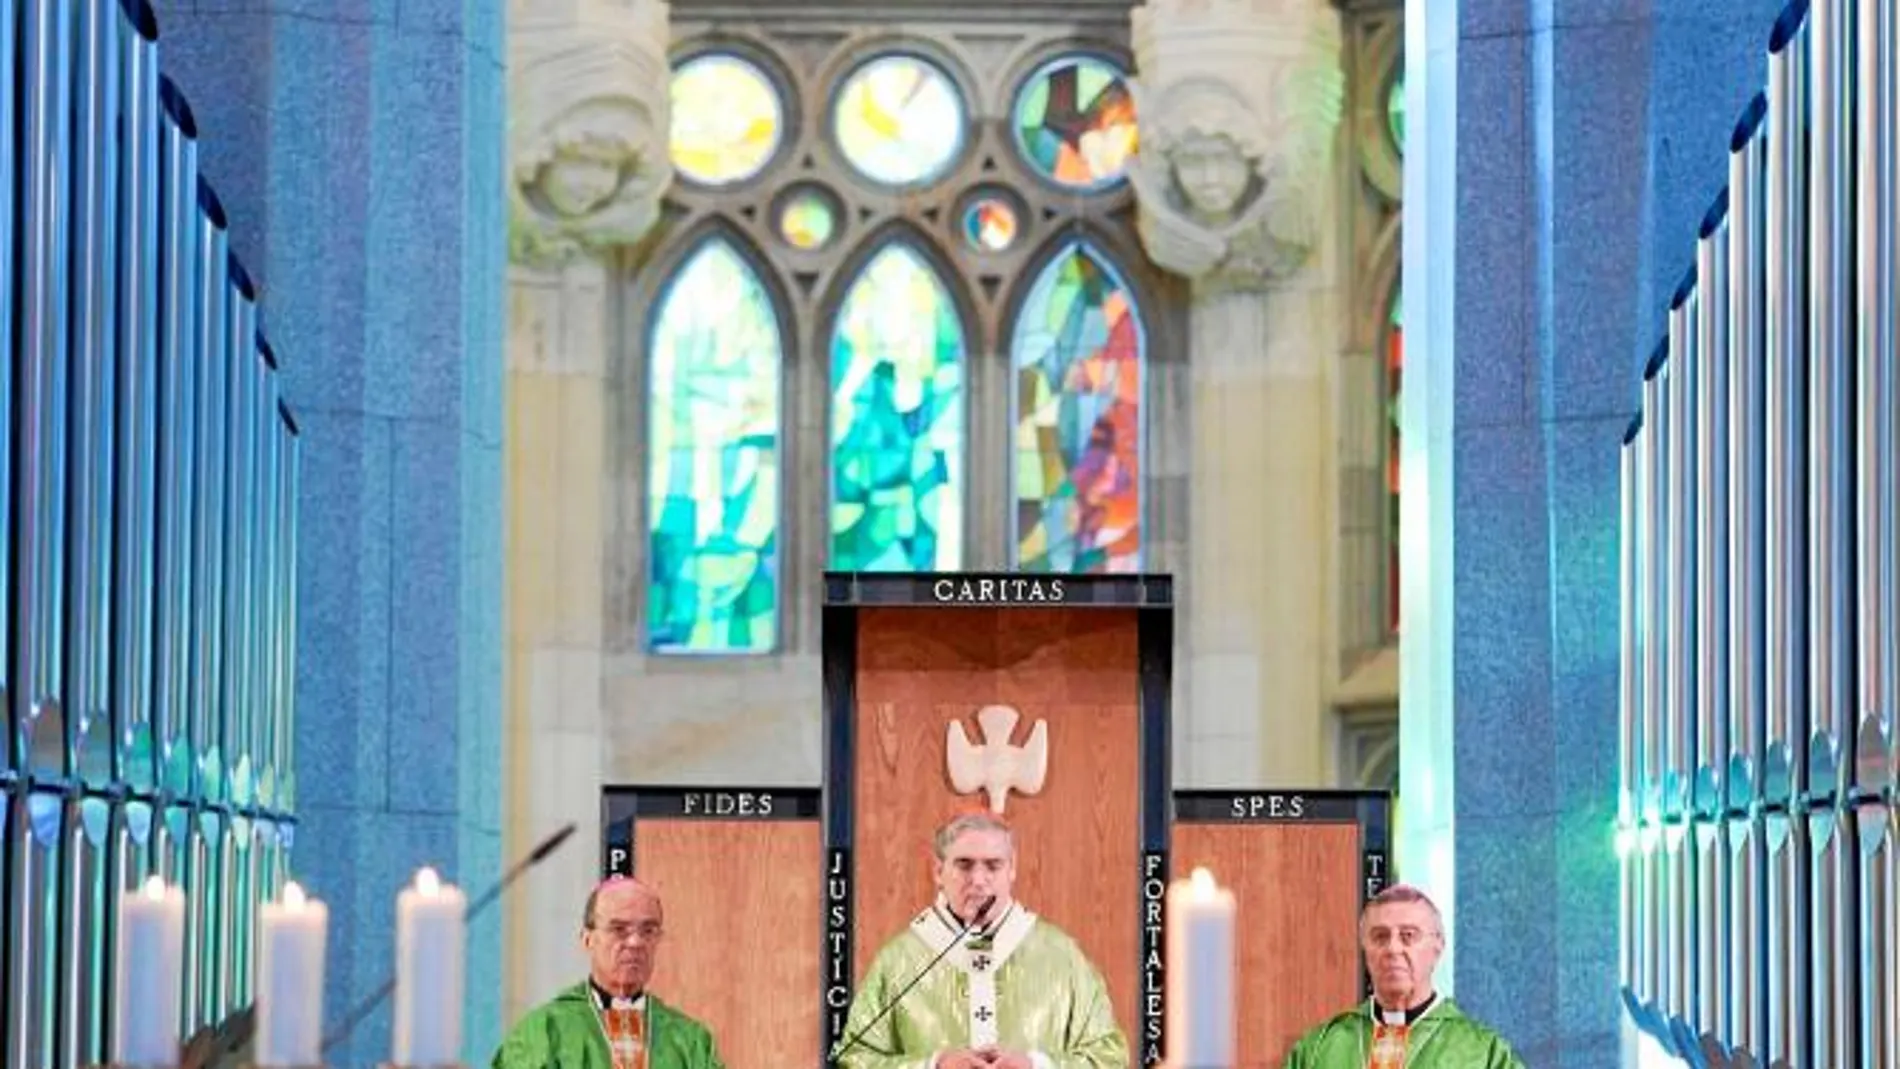 El cardenal arzobispo ofició una misa en la Sagrada Familia